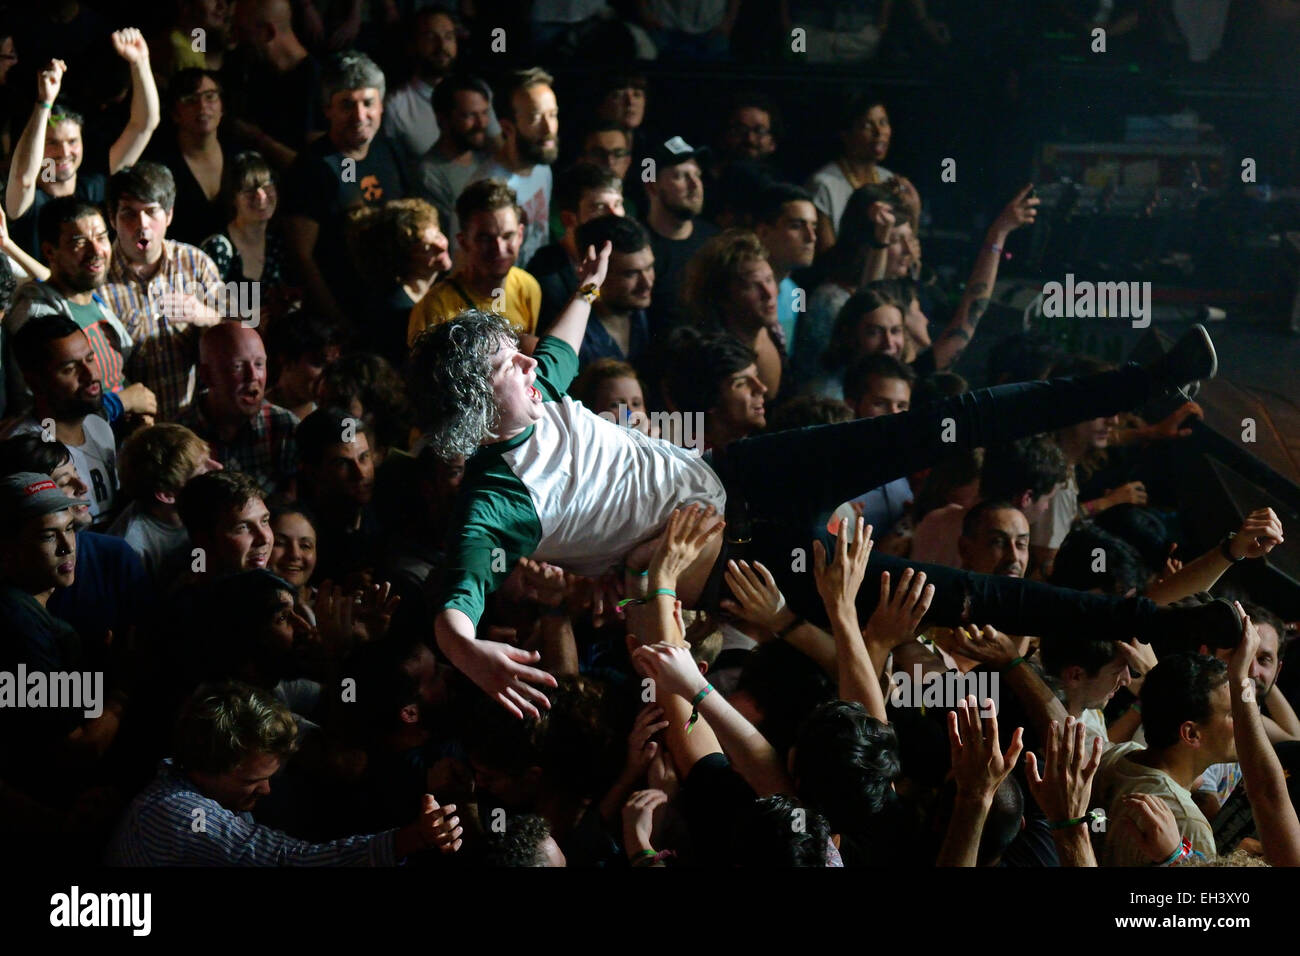 BARCELONA - 30 de mayo: Audiencia ver un concierto en el Heineken Festival Primavera Sound 2014 (PS14). Foto de stock